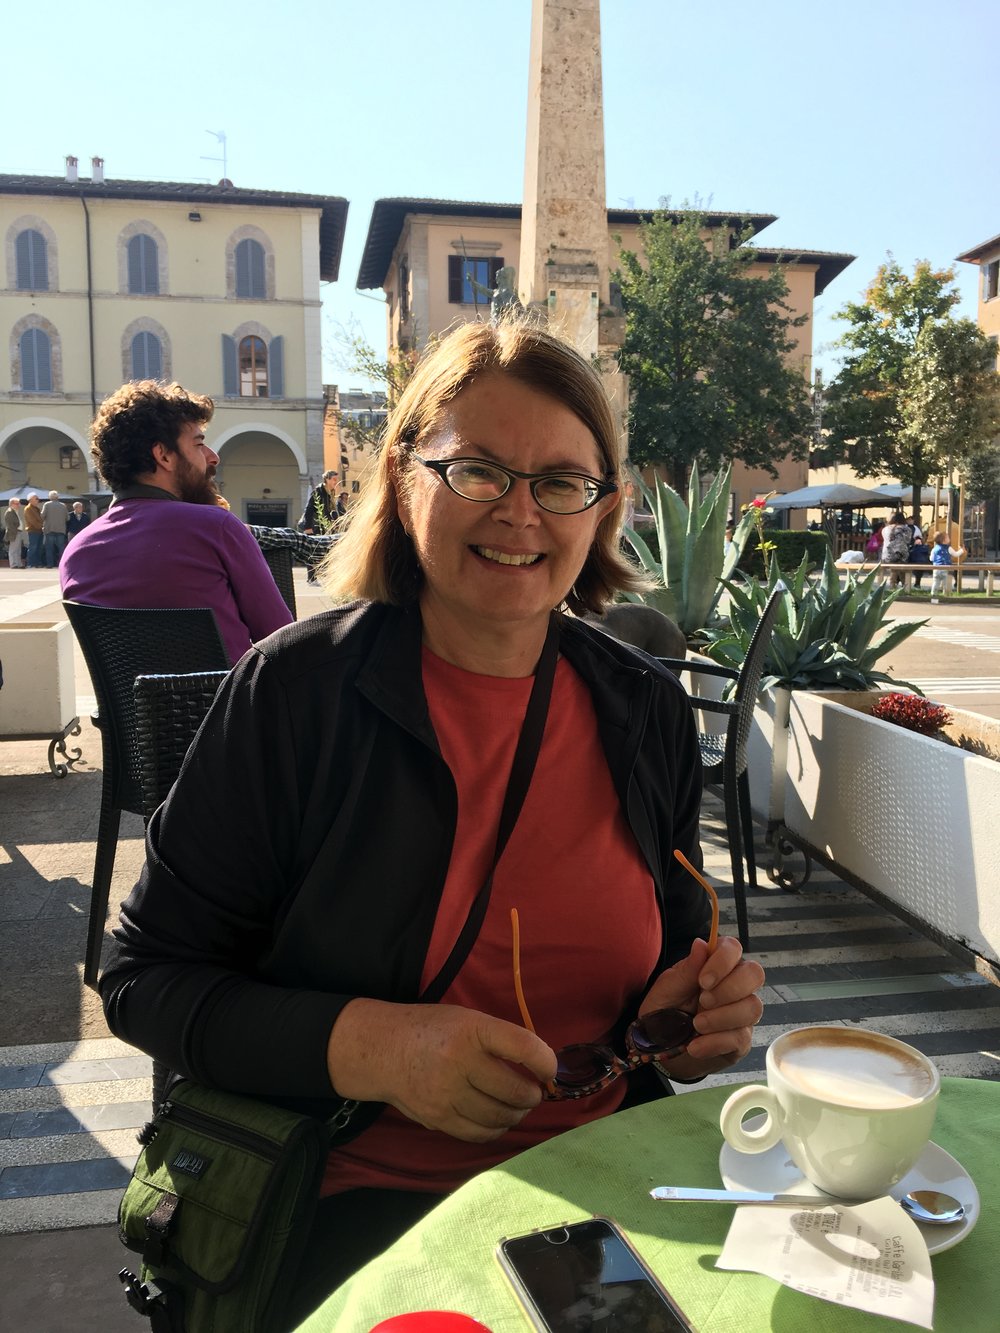 We met Karen in the town square at Colle di Val d’Elsa for morning tea.